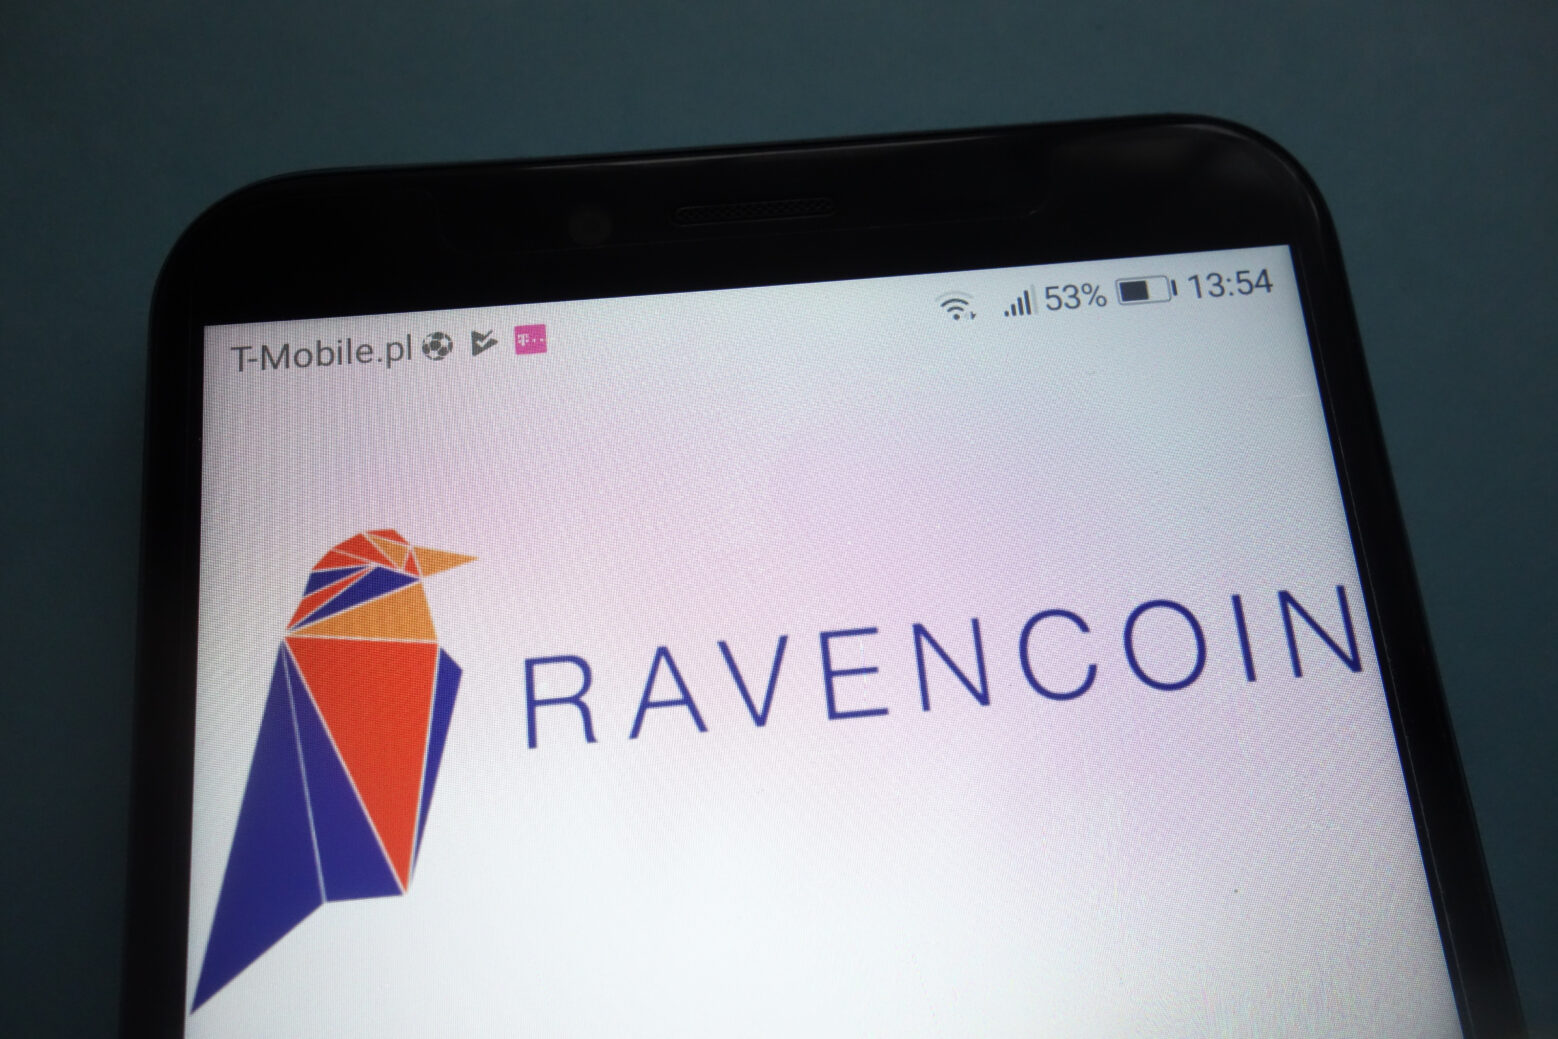 Ravencoin Use Case